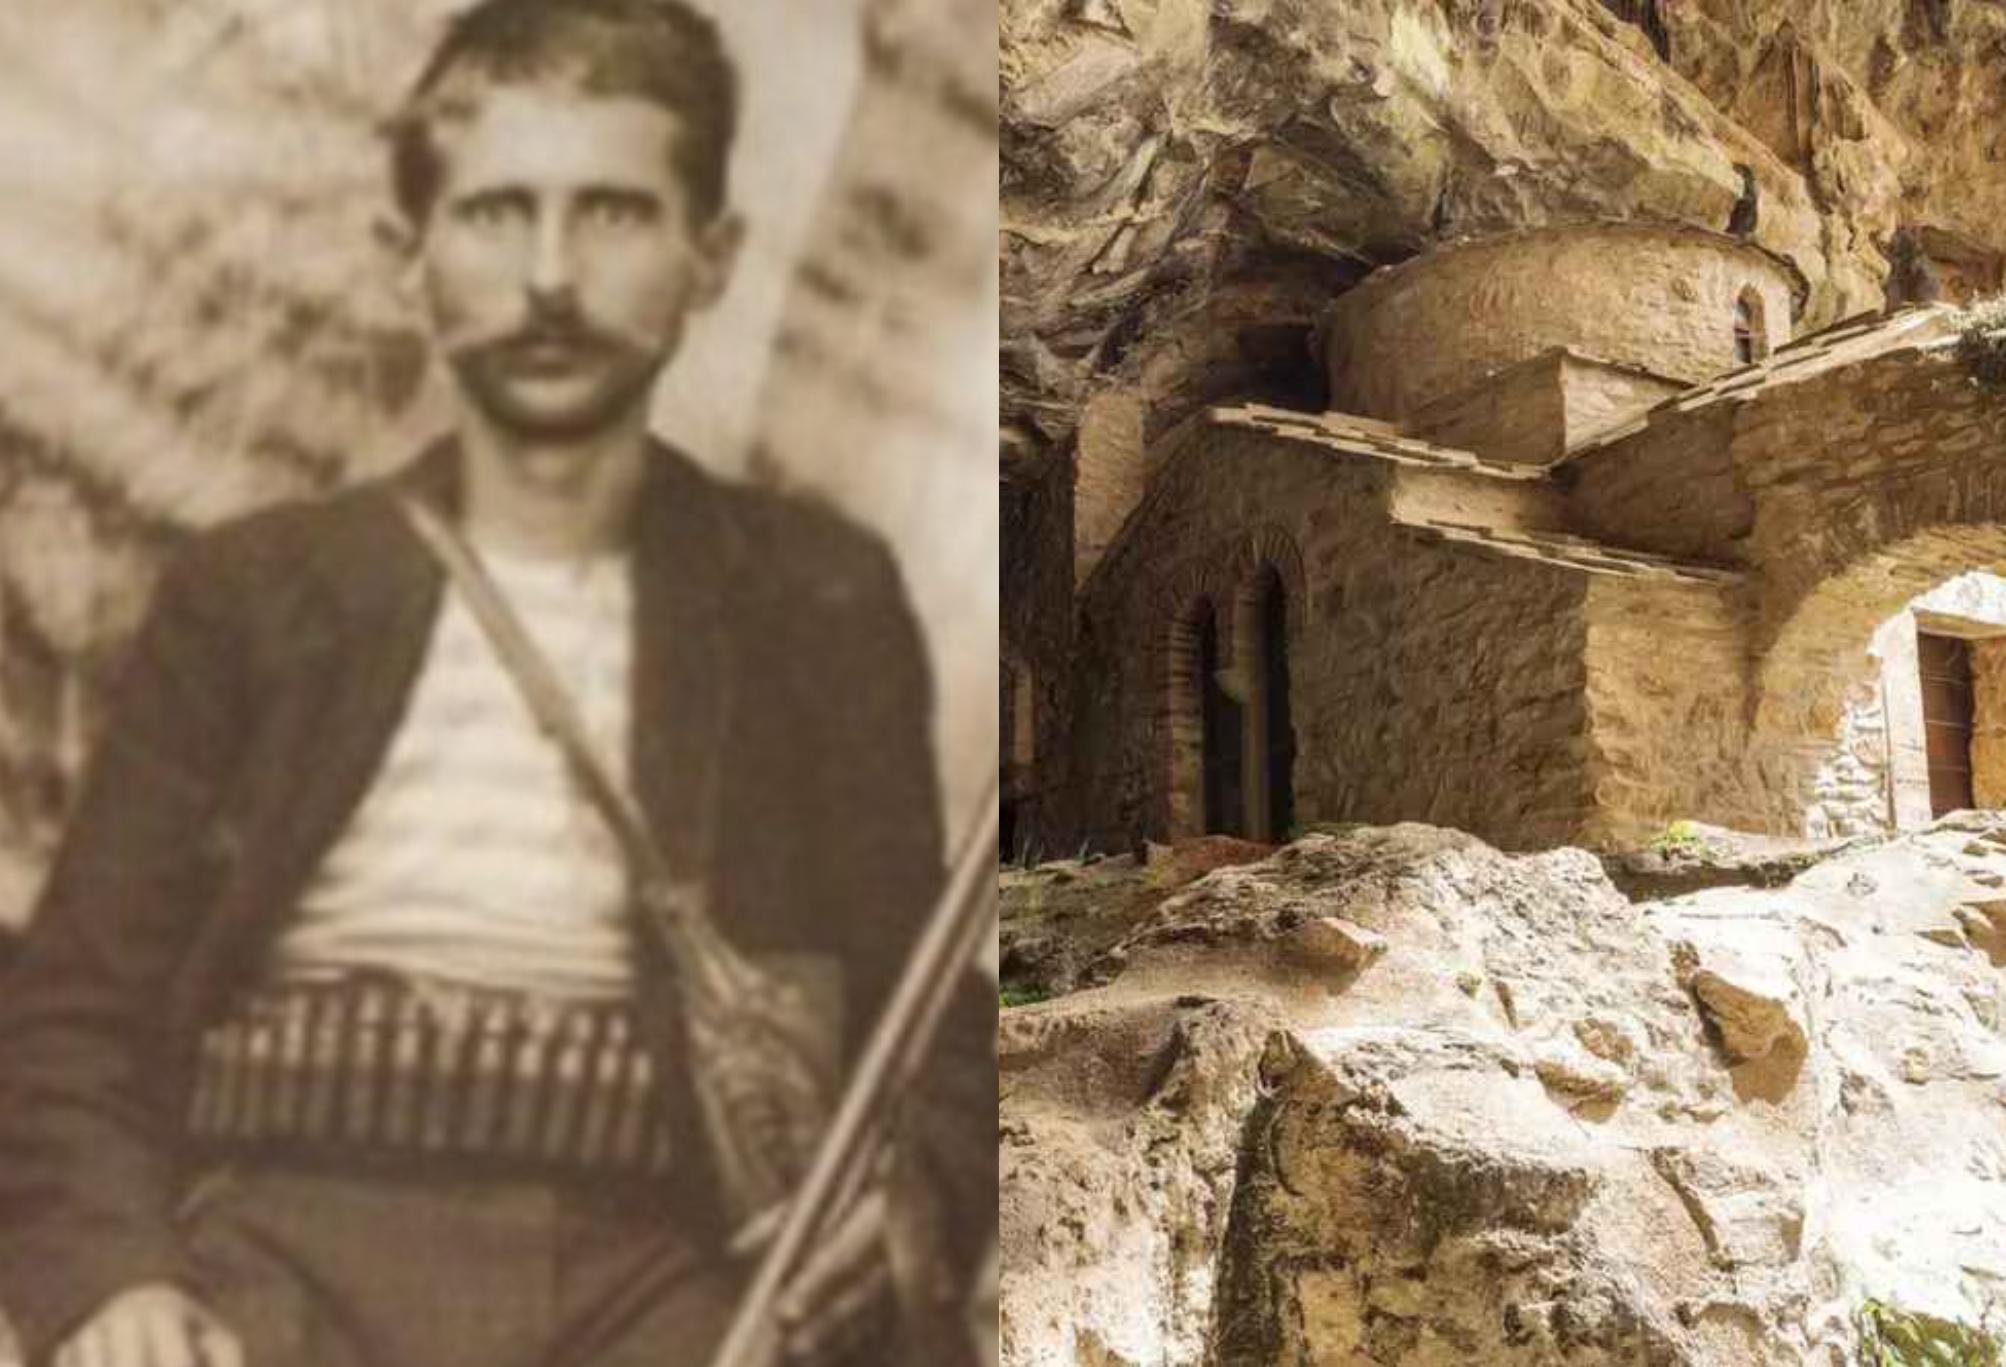 Σπήλαιο των Αμώμων ή η σπηλιά του Νταβέλη: Τα μεταφυσικά φαινόμενα το μακάβριο εύρημα και η αληθινή ιστορία για τον λήσταρχο – Που σταματάει ο μύθος και που αρχίζει η πραγματικότητα